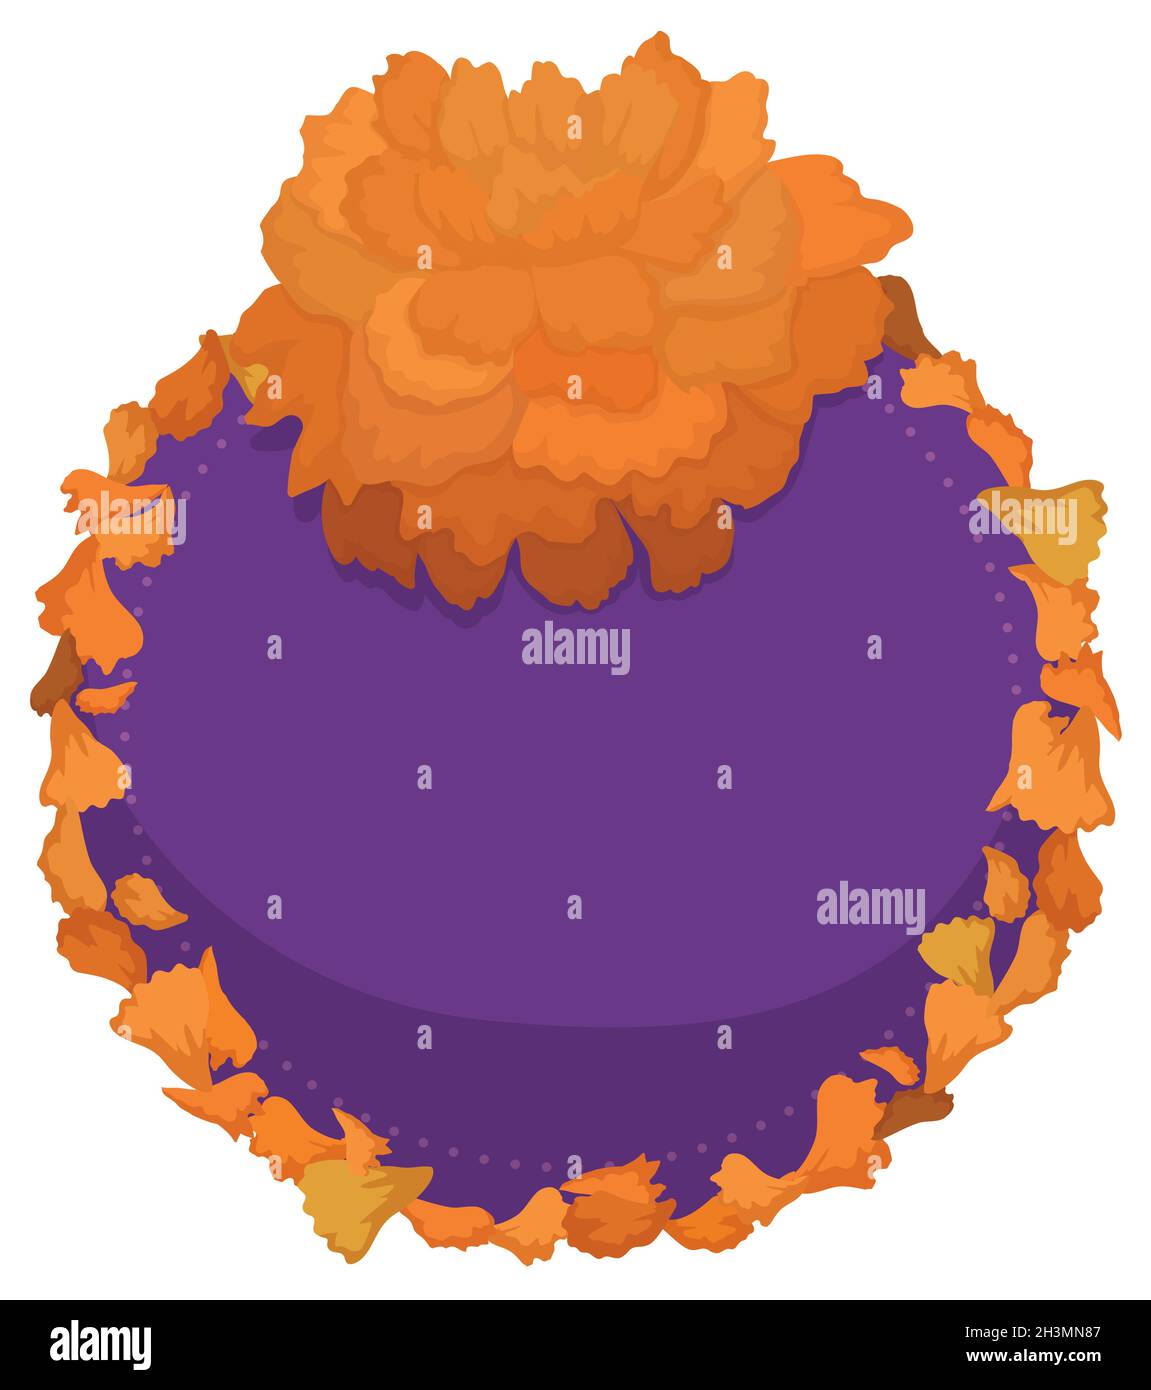 Ringelblume über leerem purpurfarbenen runden Knopf mit Blütenblättern in der Bordüre. Stock Vektor